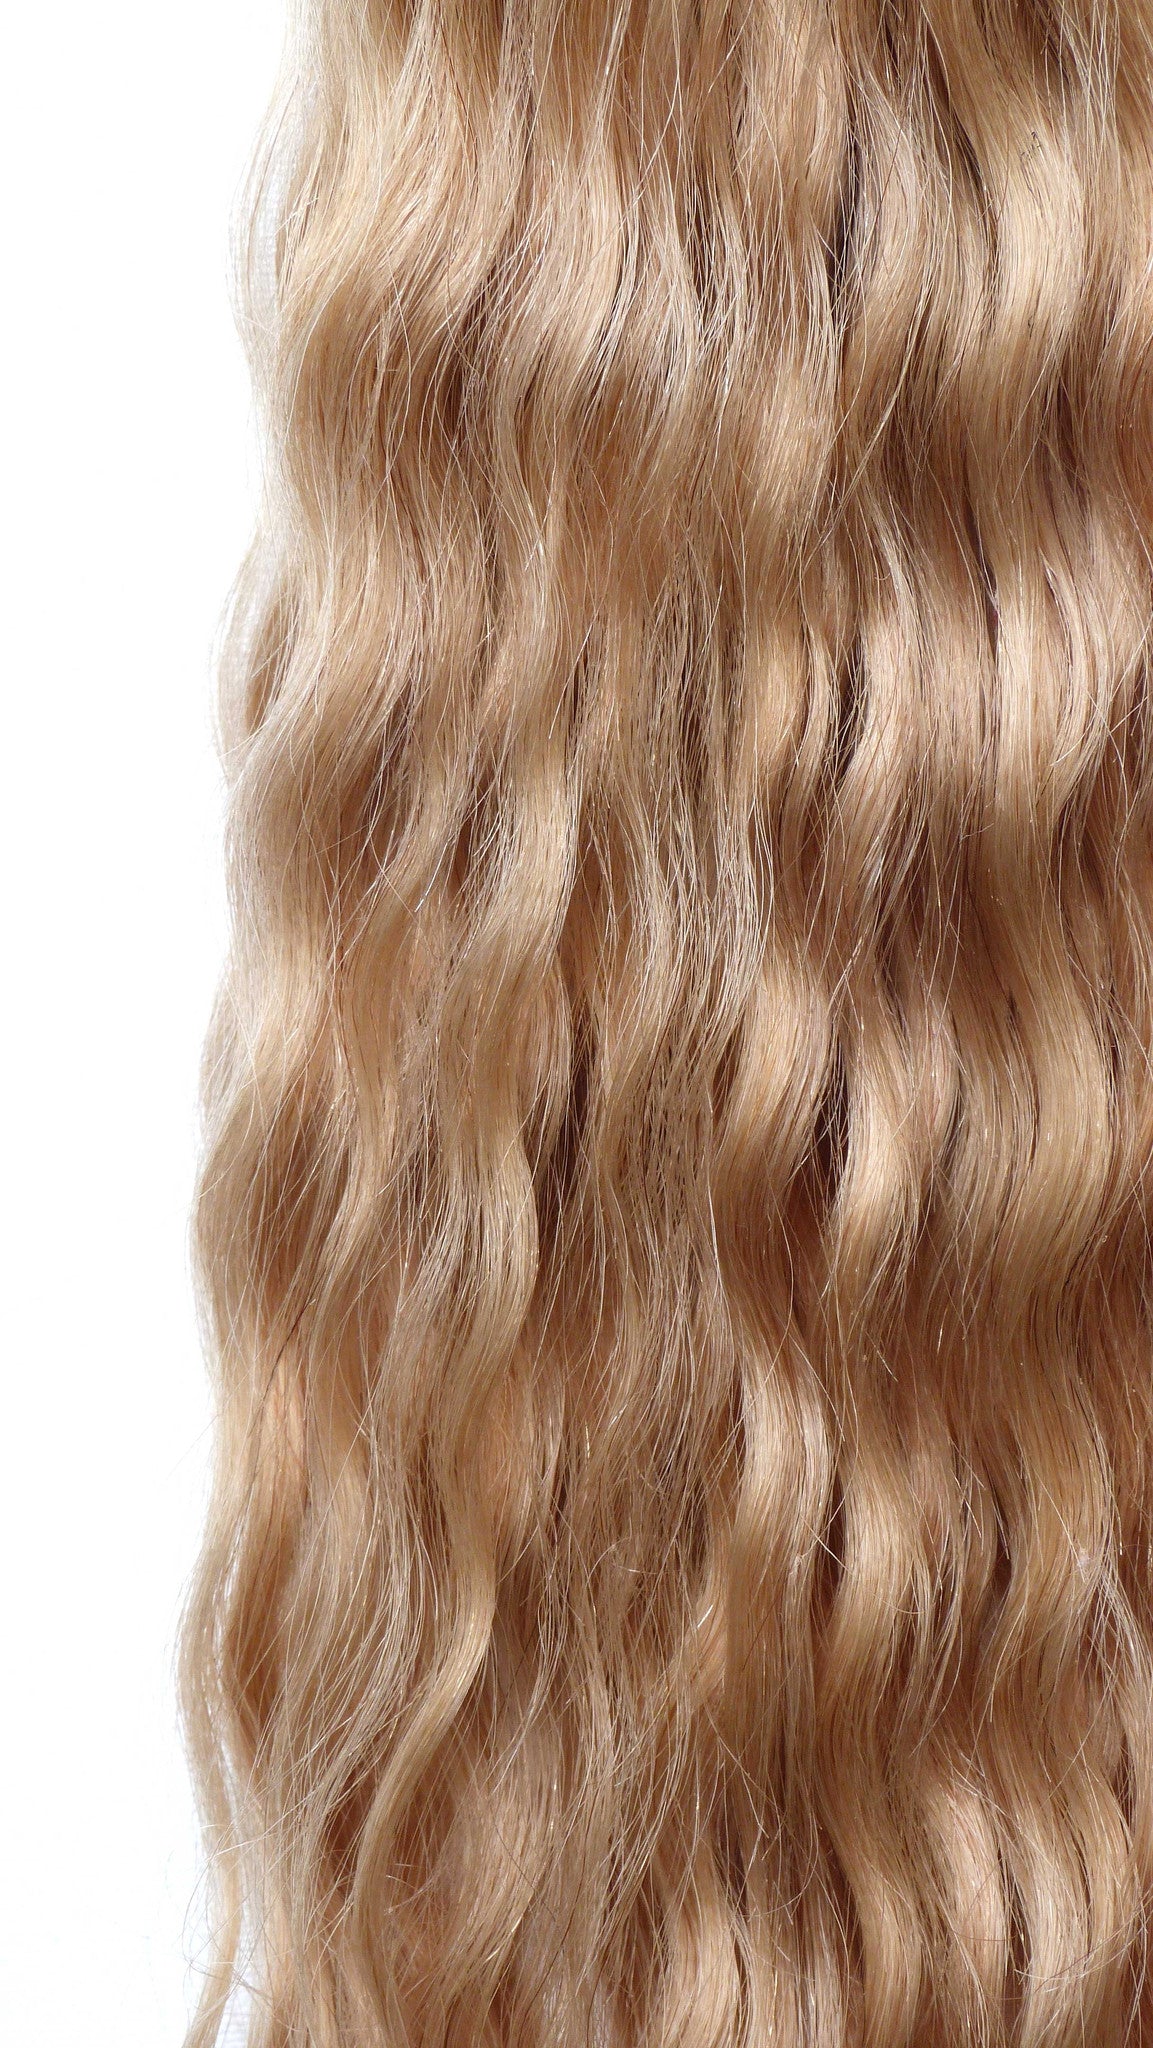 European Virgin Human Hair Extensions - Micro Loop Extensions-Virgin Hair & Beauty, The Best Hair Extensions, Real Virgin Human Hair.